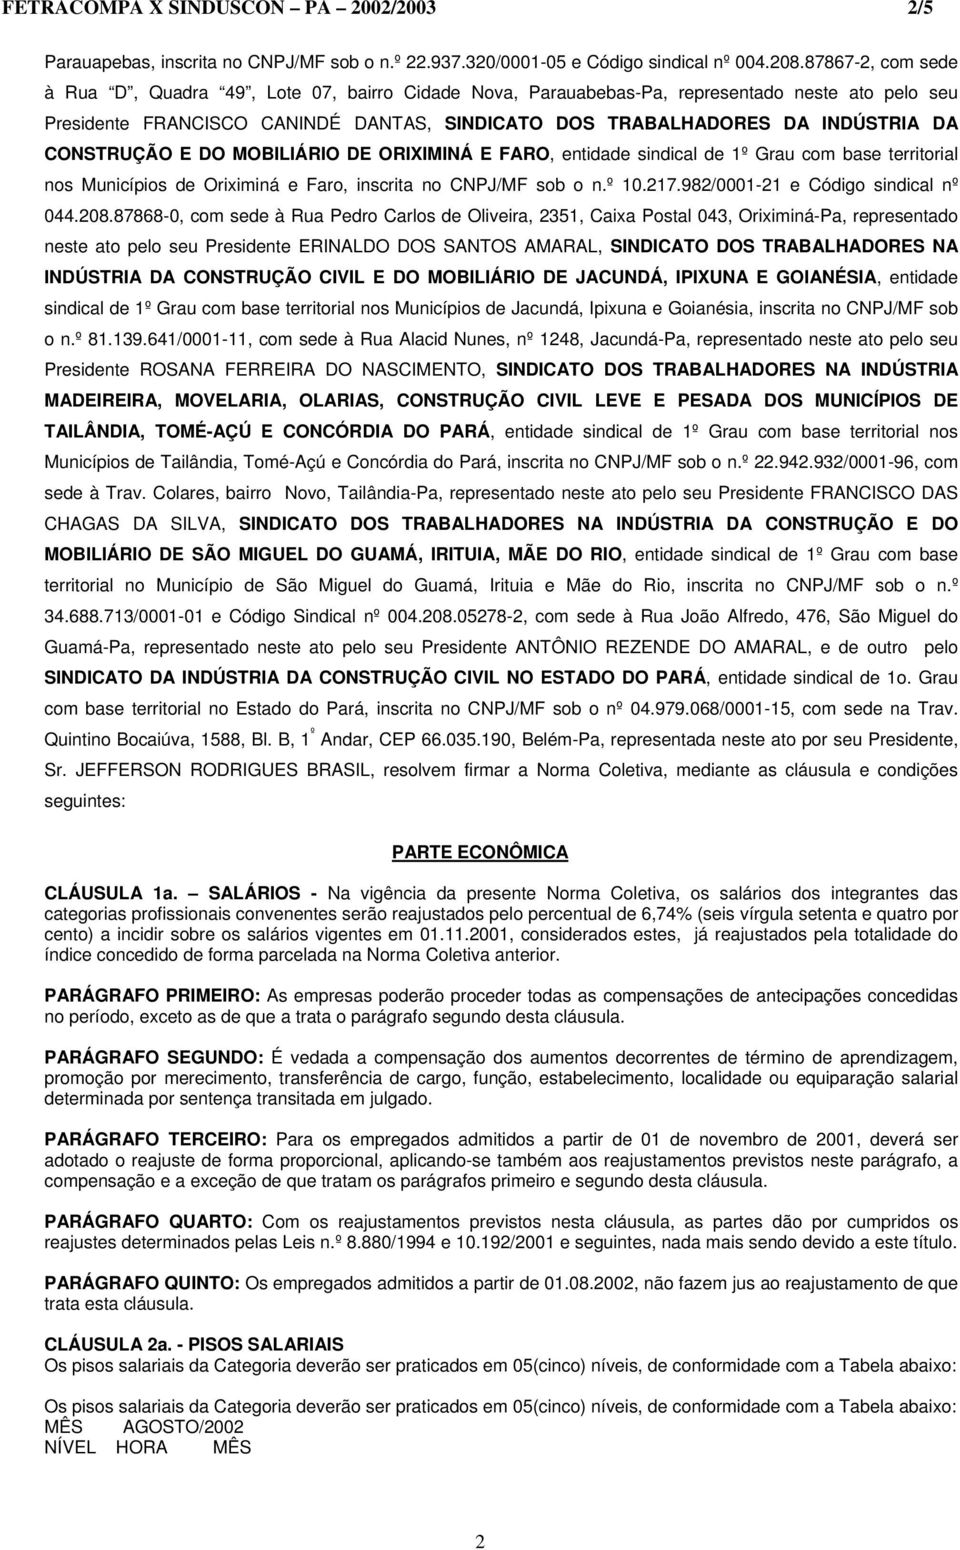 CONSTRUÇÃO E DO MOBILIÁRIO DE ORIXIMINÁ E FARO, entidade sindical de 1º Grau com base territorial nos Municípios de Oriximiná e Faro, inscrita no CNPJ/MF sob o n.º 10.217.